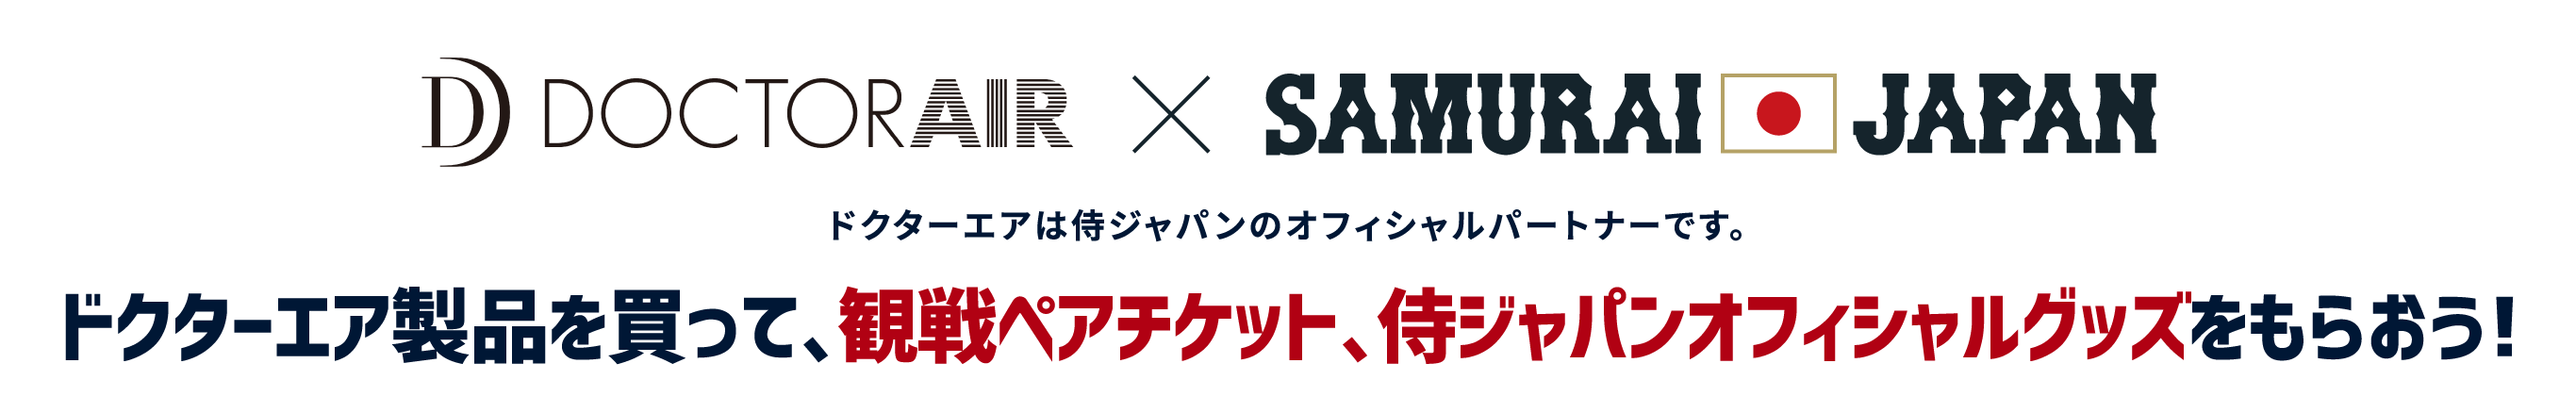 DOCTORAIR x SAMURAI JAPAN ドクターエアは侍ジャパンのオフィシャルパートナーです。 ドクターエア製品を買って、観戦ペアチケット、侍ジャパンオフィシャルグッズをもらおう！